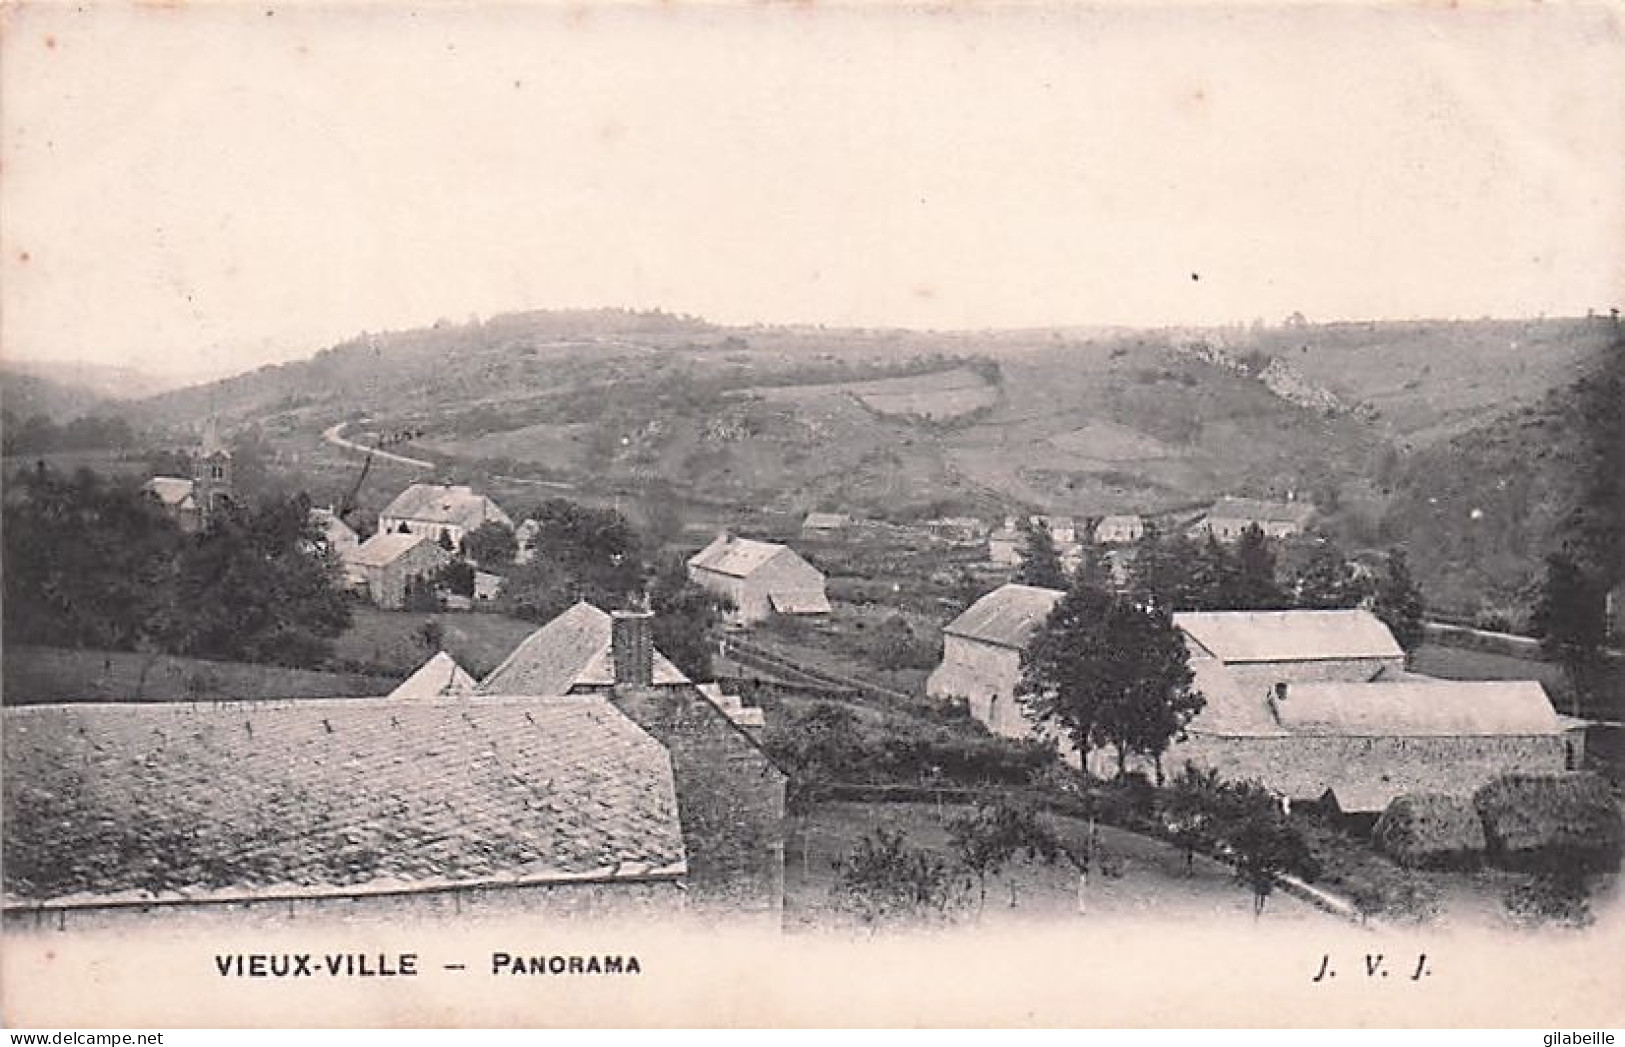 Ferrieres - VIEUXVILLE - VIEUX VILLE  - Panorama - 1907 - Ferrières